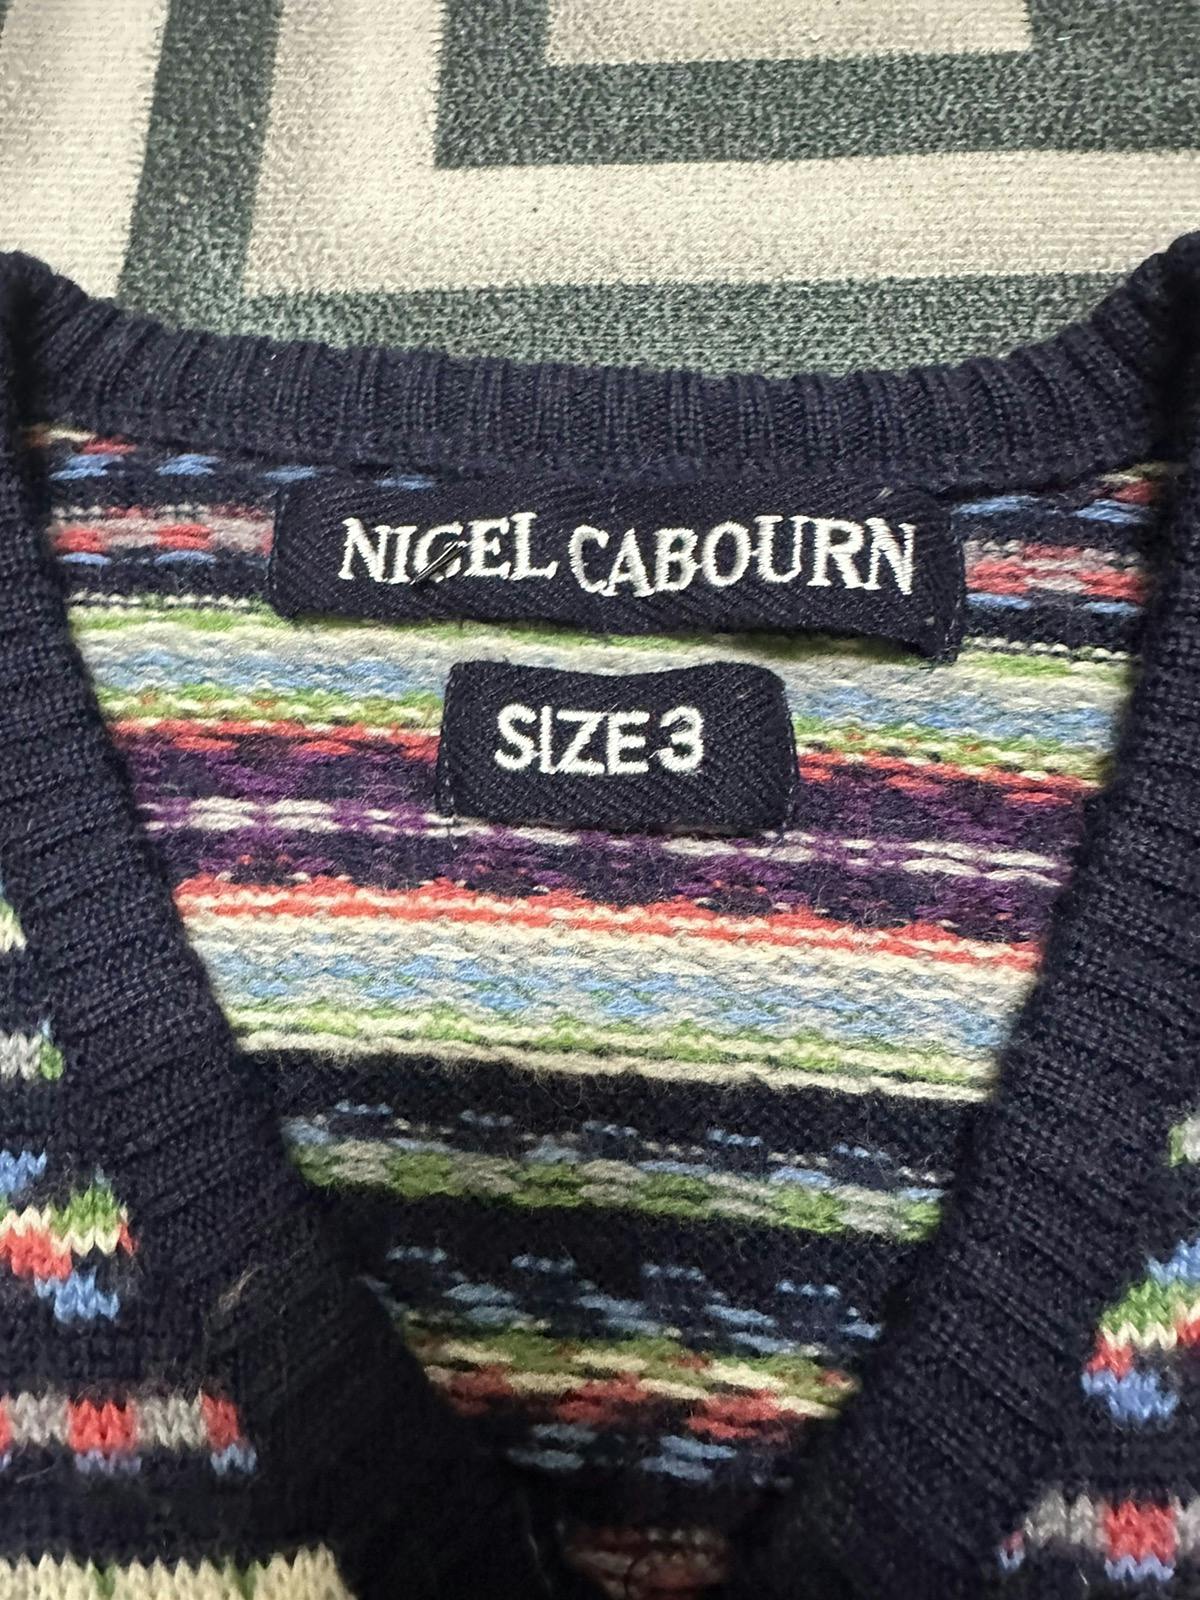 Nigel cabourn wool knitwear - 3